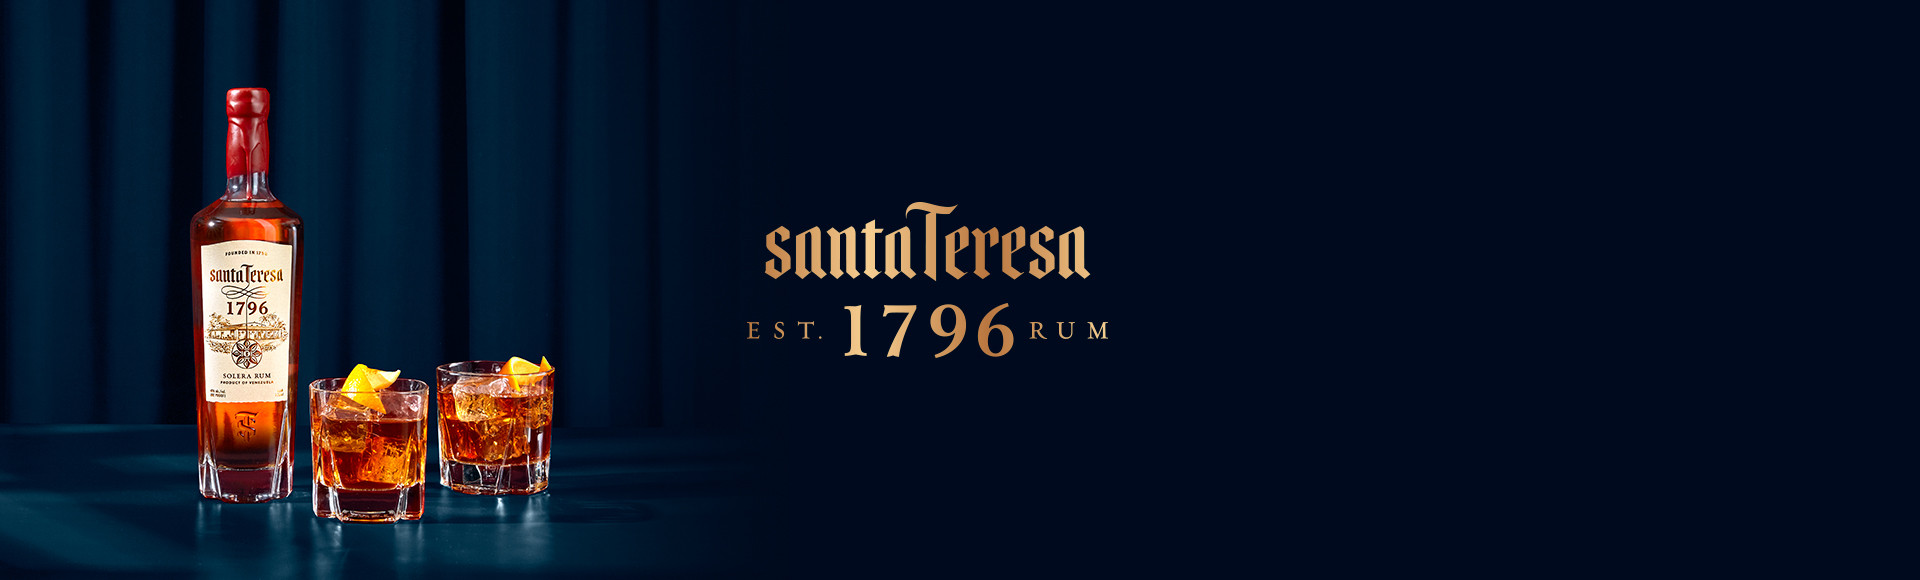 Santa Teresa 1796, un rhum d’exception. 